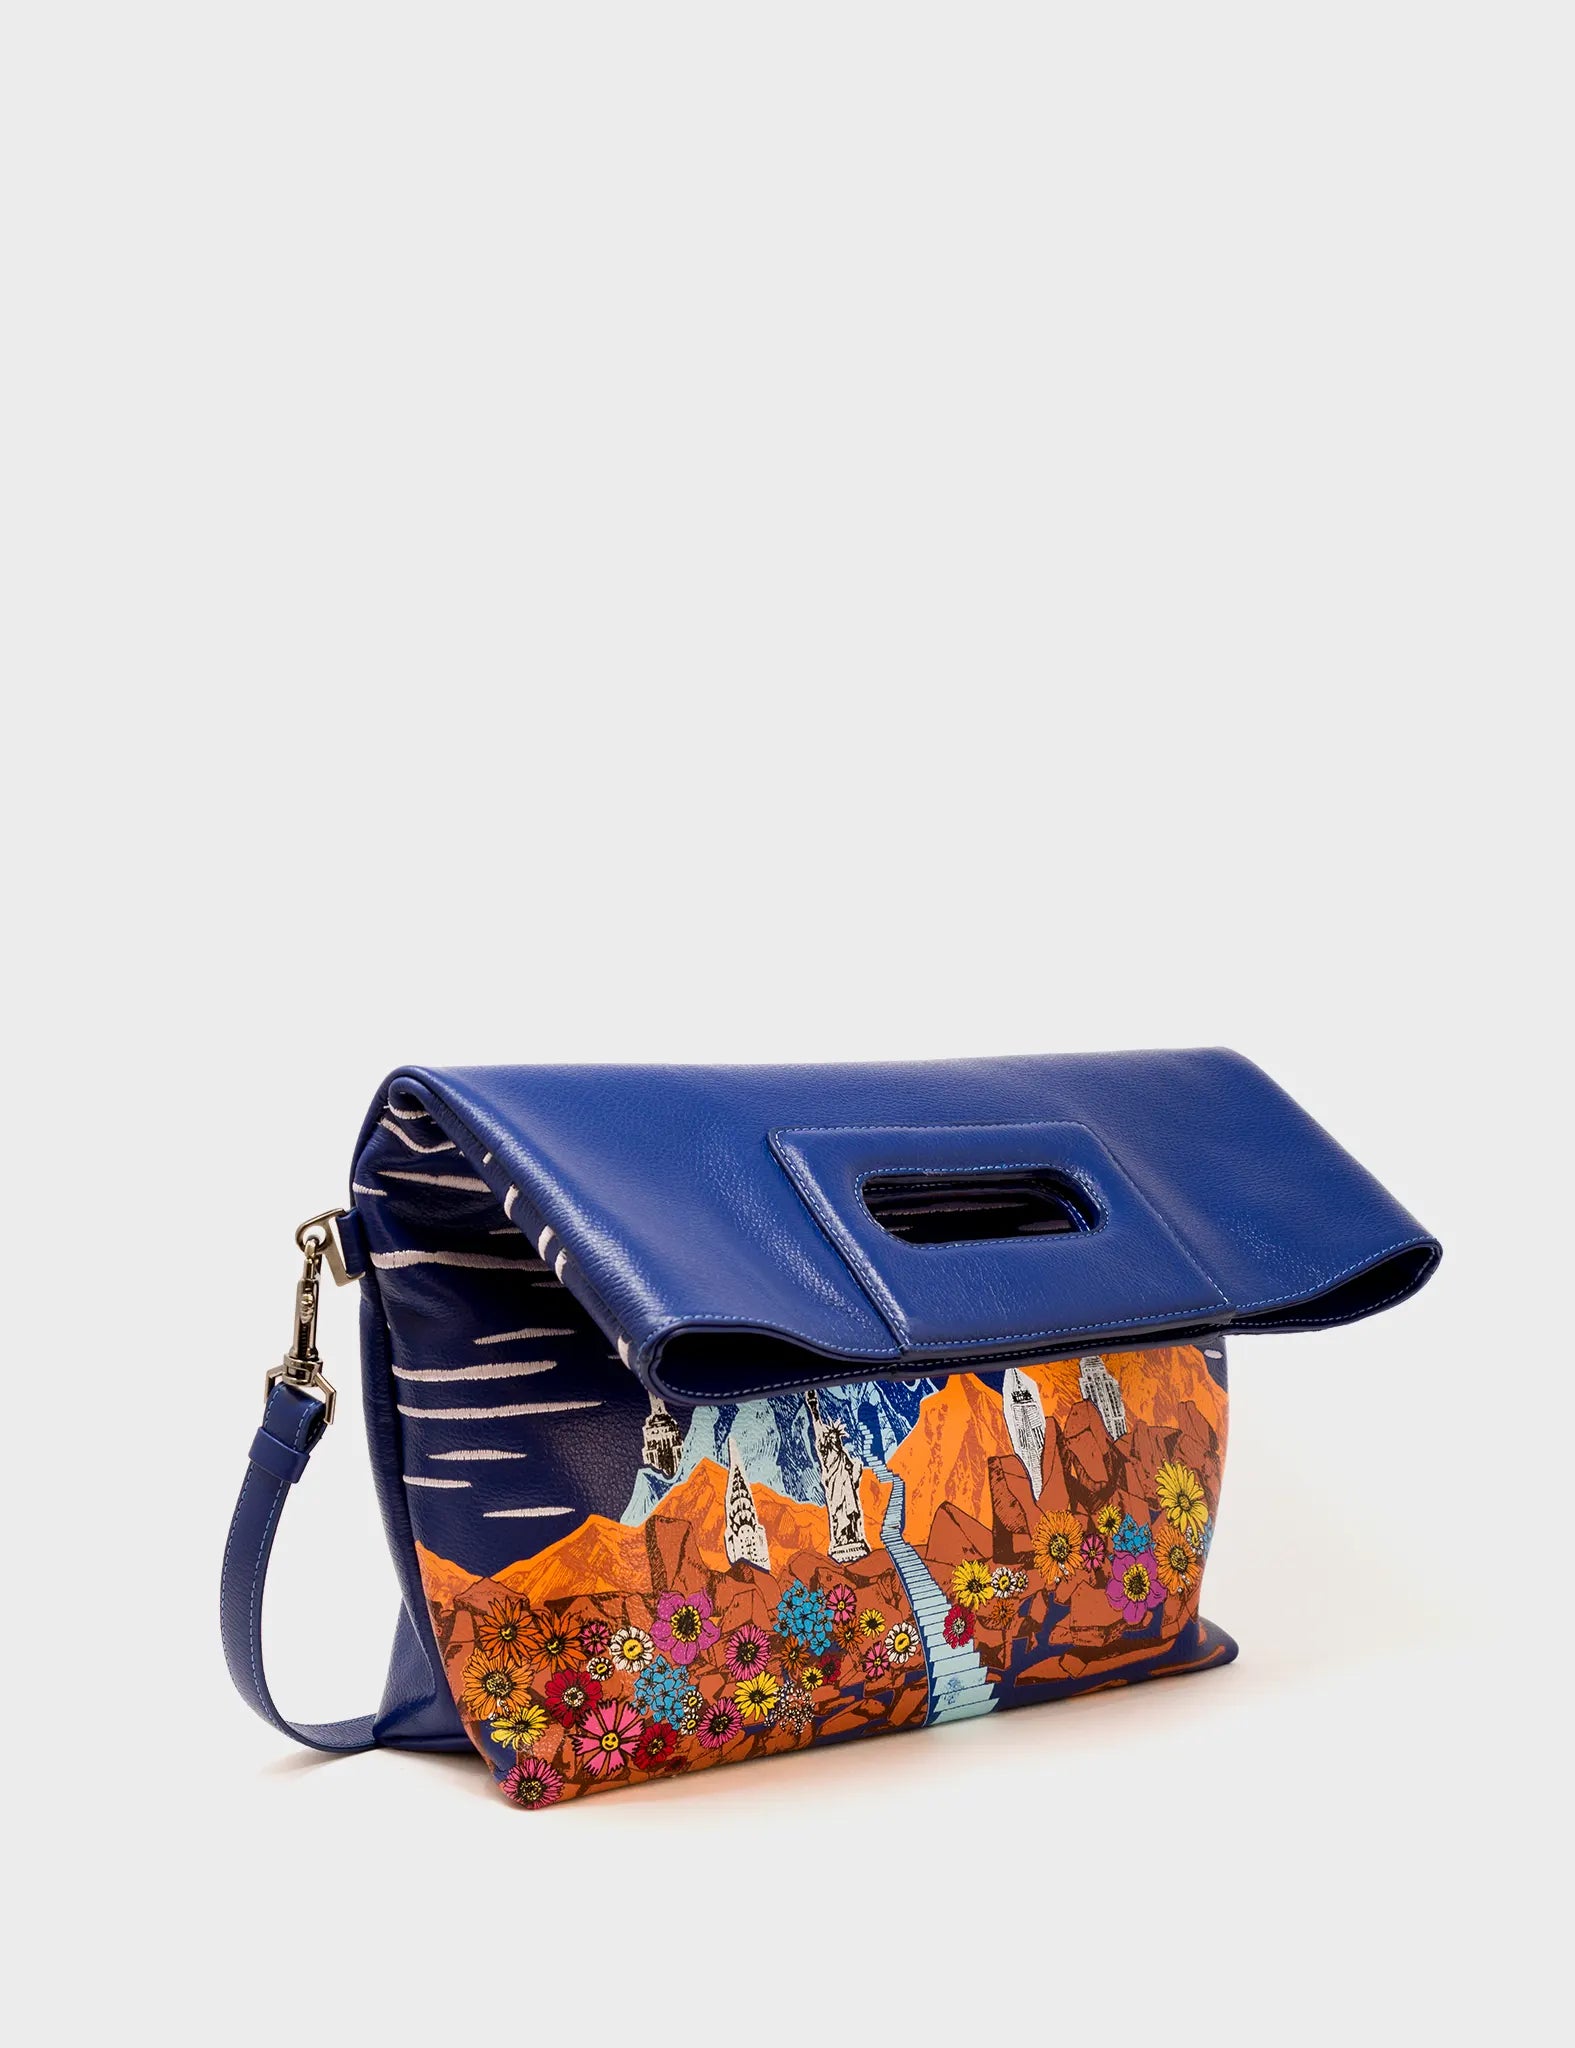 Convertible Royal Blue Leather Handbag - Utopian Landscape  - Folded